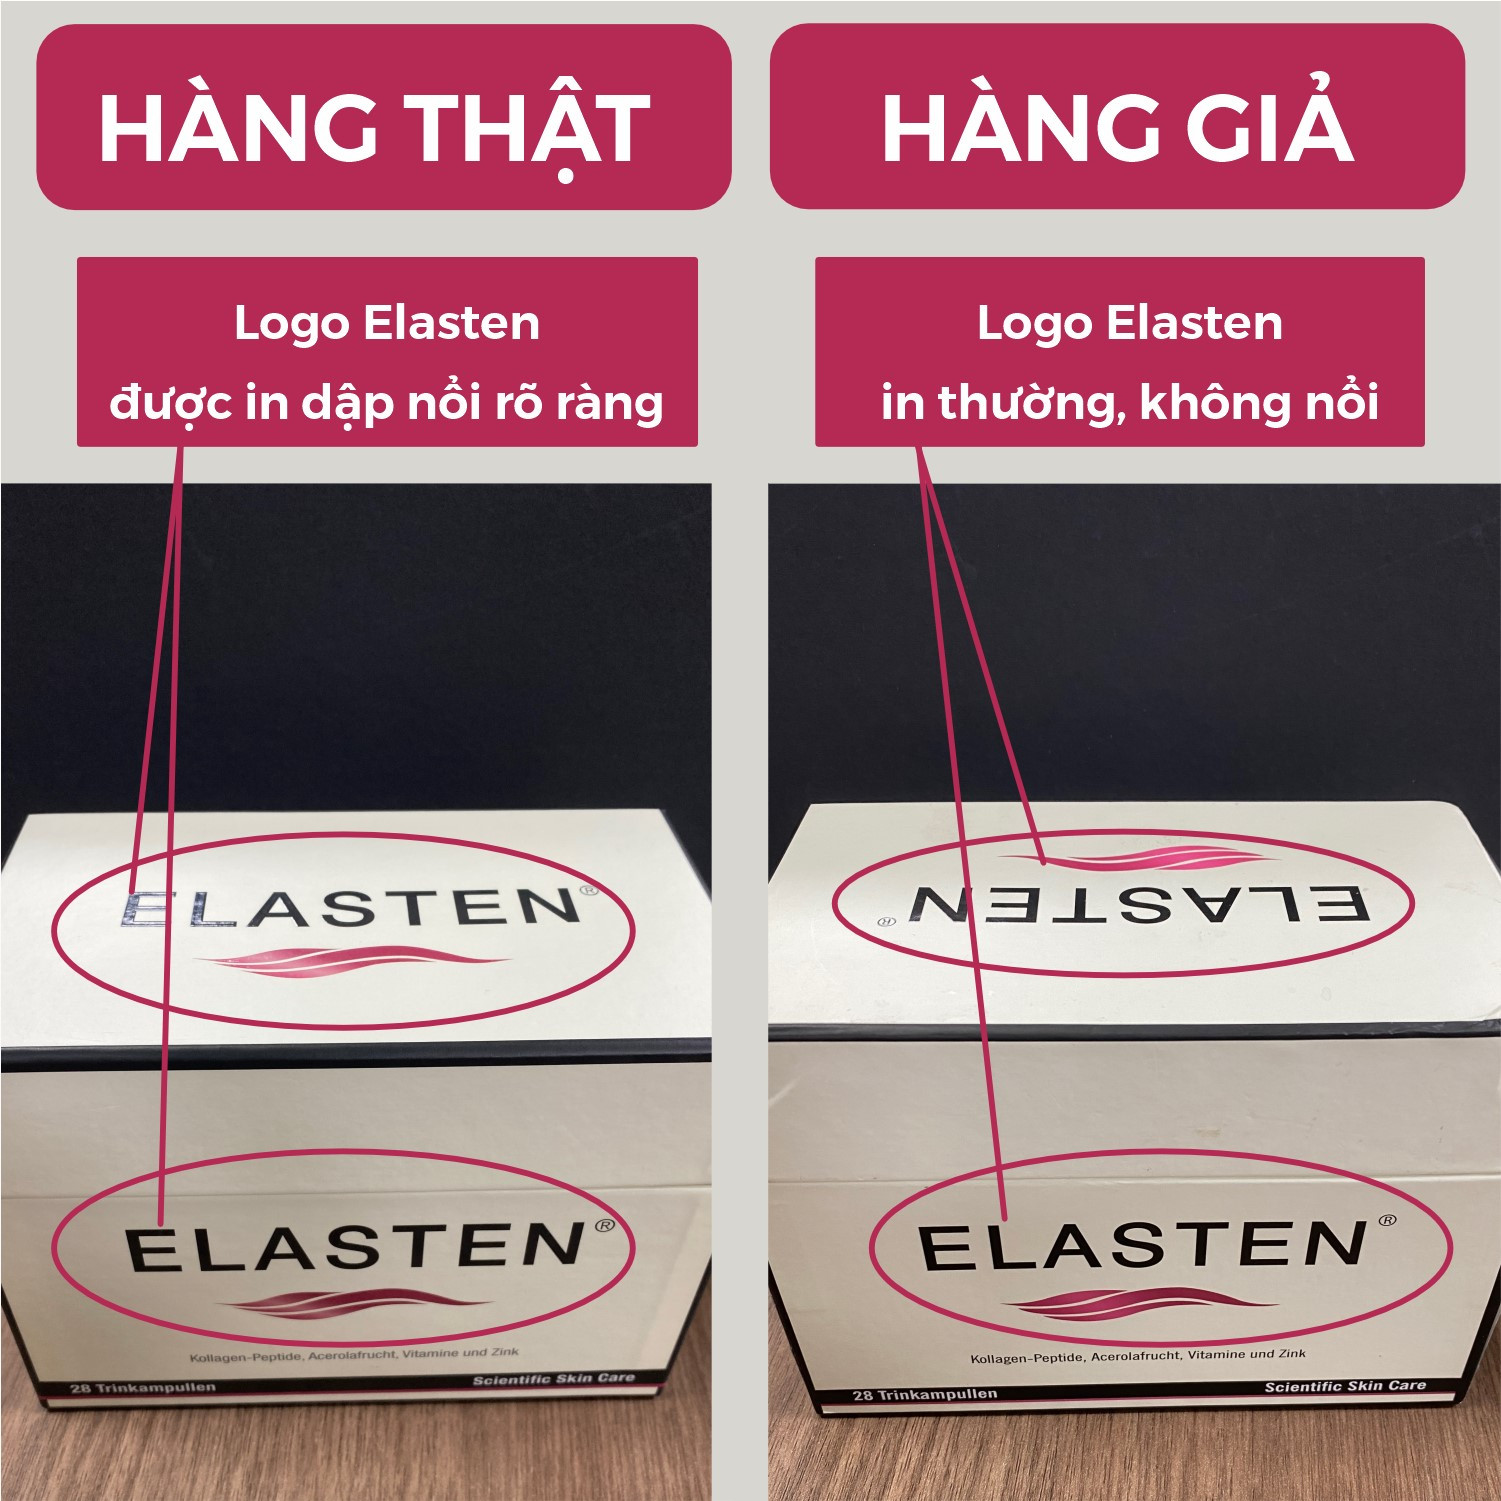 Logo Elasten trên nắp và mặt trước hộp sản phẩm chính hãng được in nổi, còn sản phẩm giả in thường không nổi